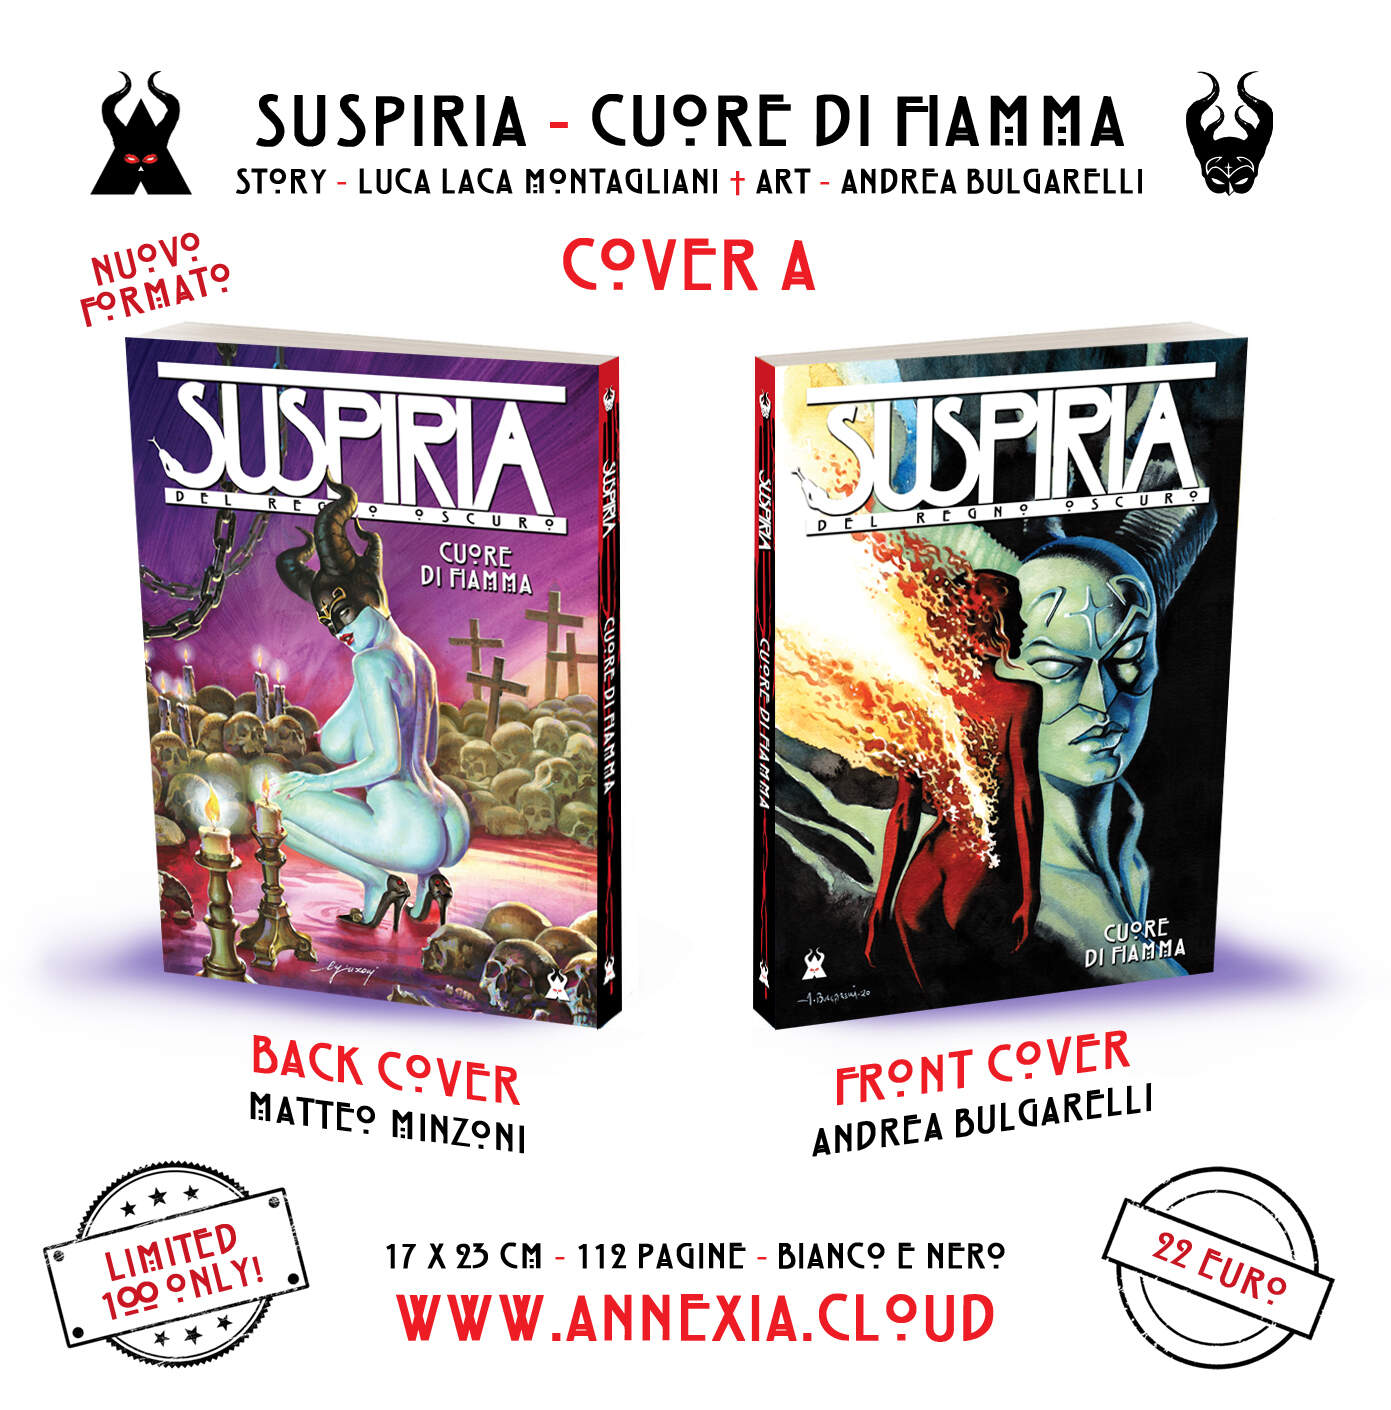 SUSPIRIA - CUORE DI FIAMMA (COVER A)